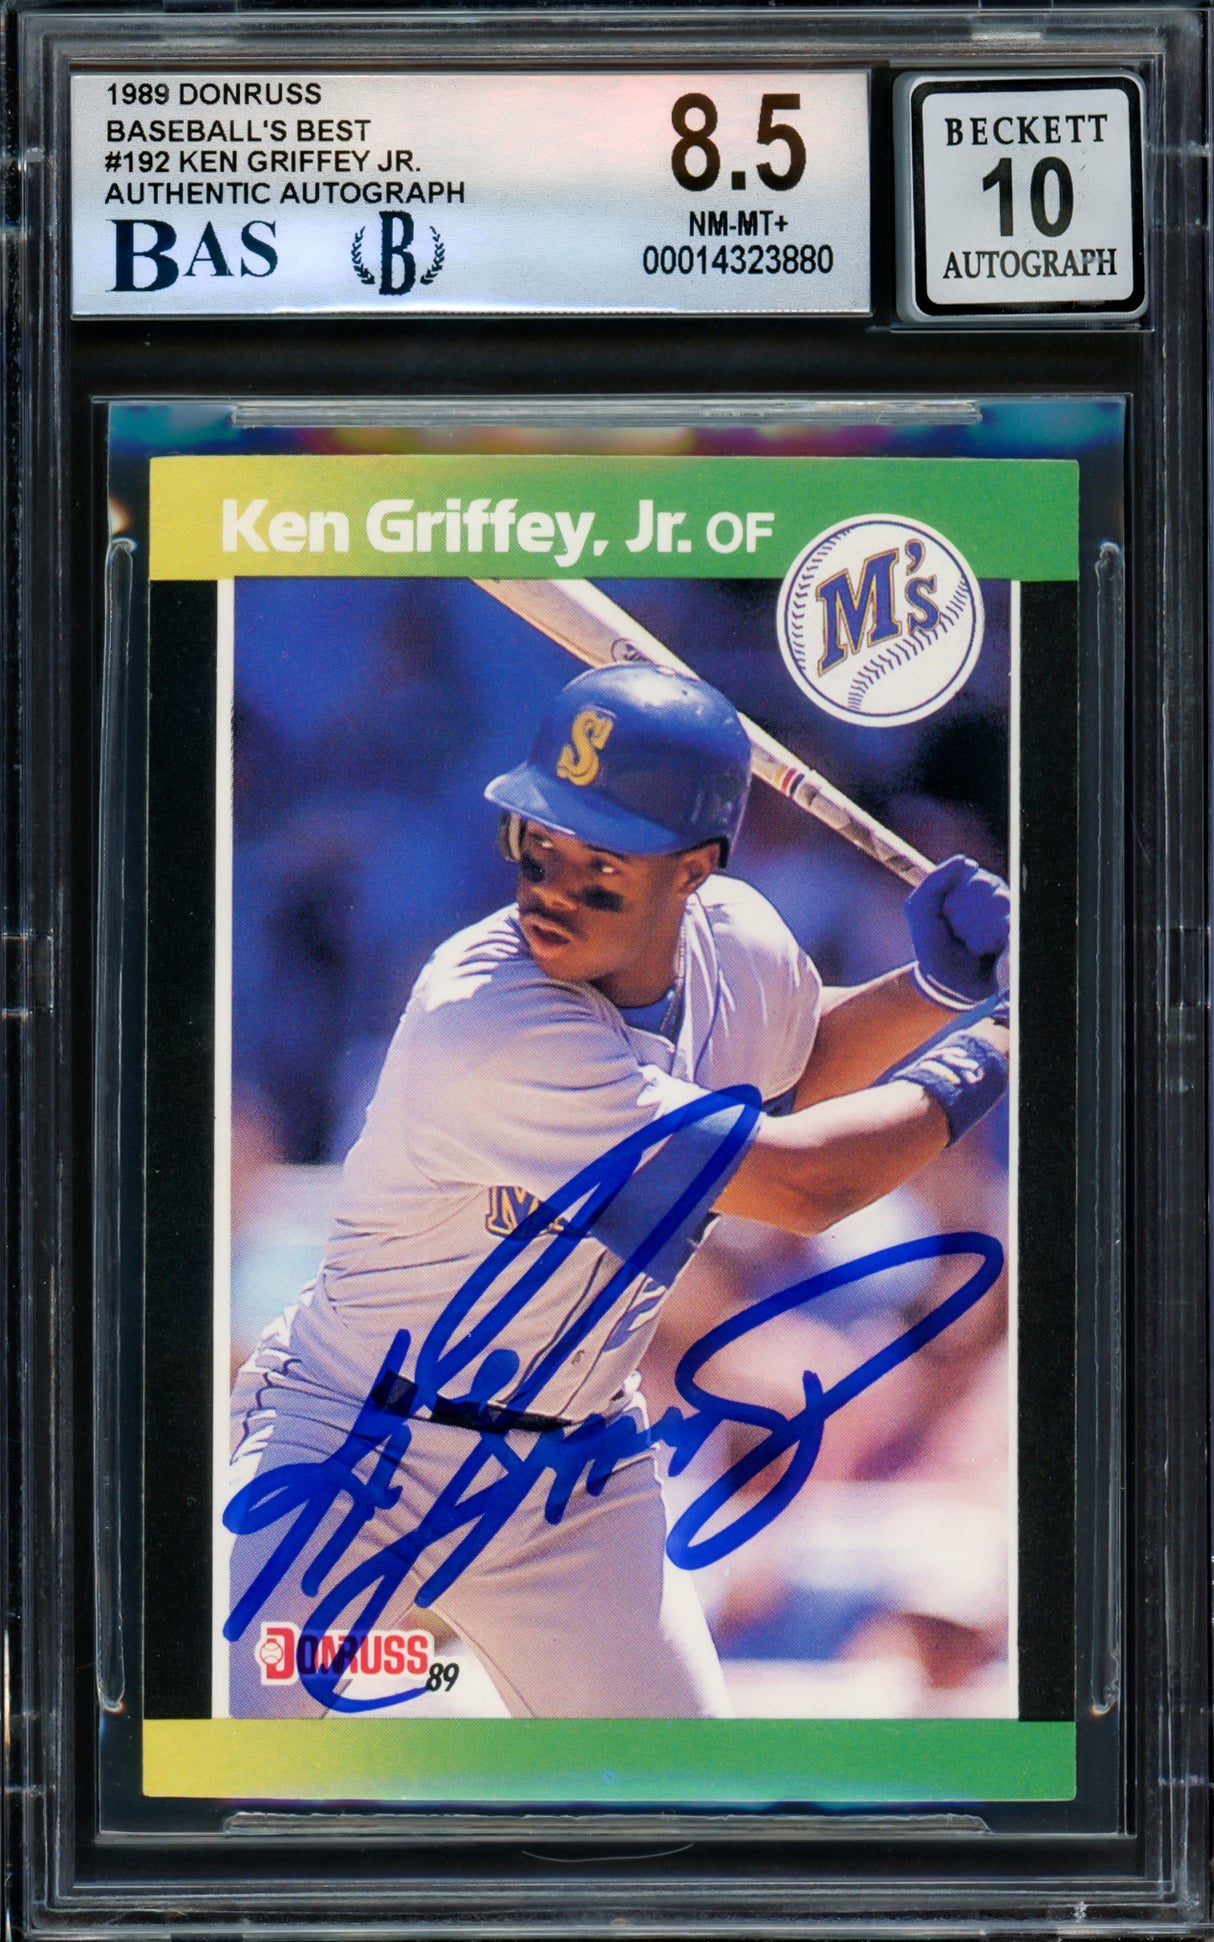 Ken Griffey Jr. Autographed 1989 Donruss Baseball's Best Rookie Card #192 Seattle Mariners BGS 8.5 Auto Grade Gem Mint 10 Beckett BAS #14323880